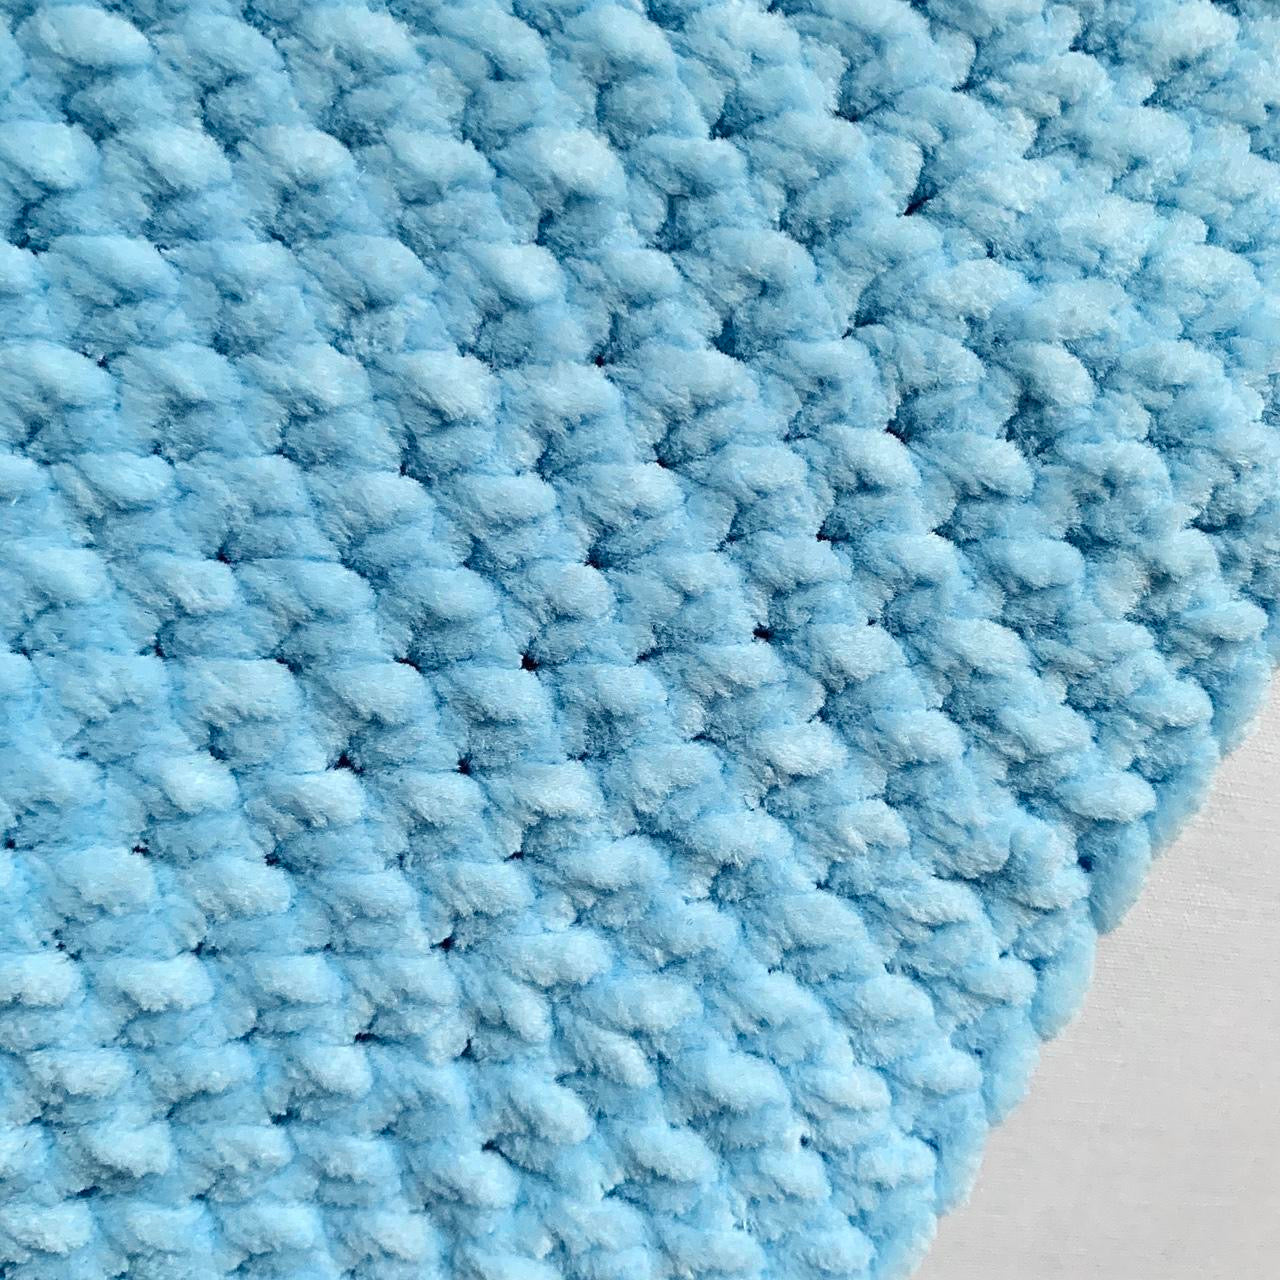 Handmade crushed velvet crochet bucket hat in baby blue